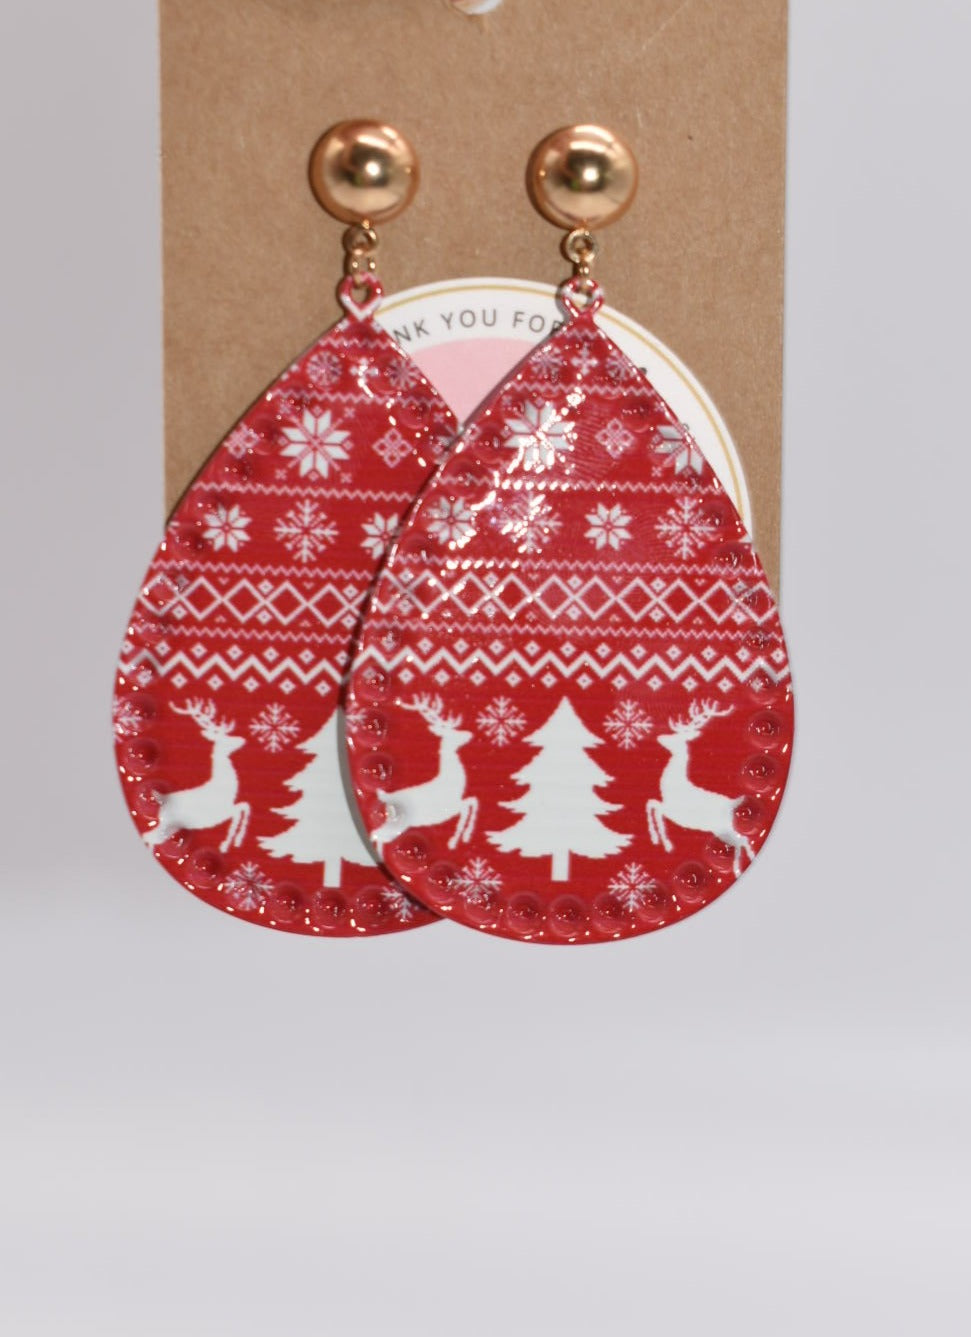 Seasonal Earrings: Christmas Snowflake & Elk Drop Earrings